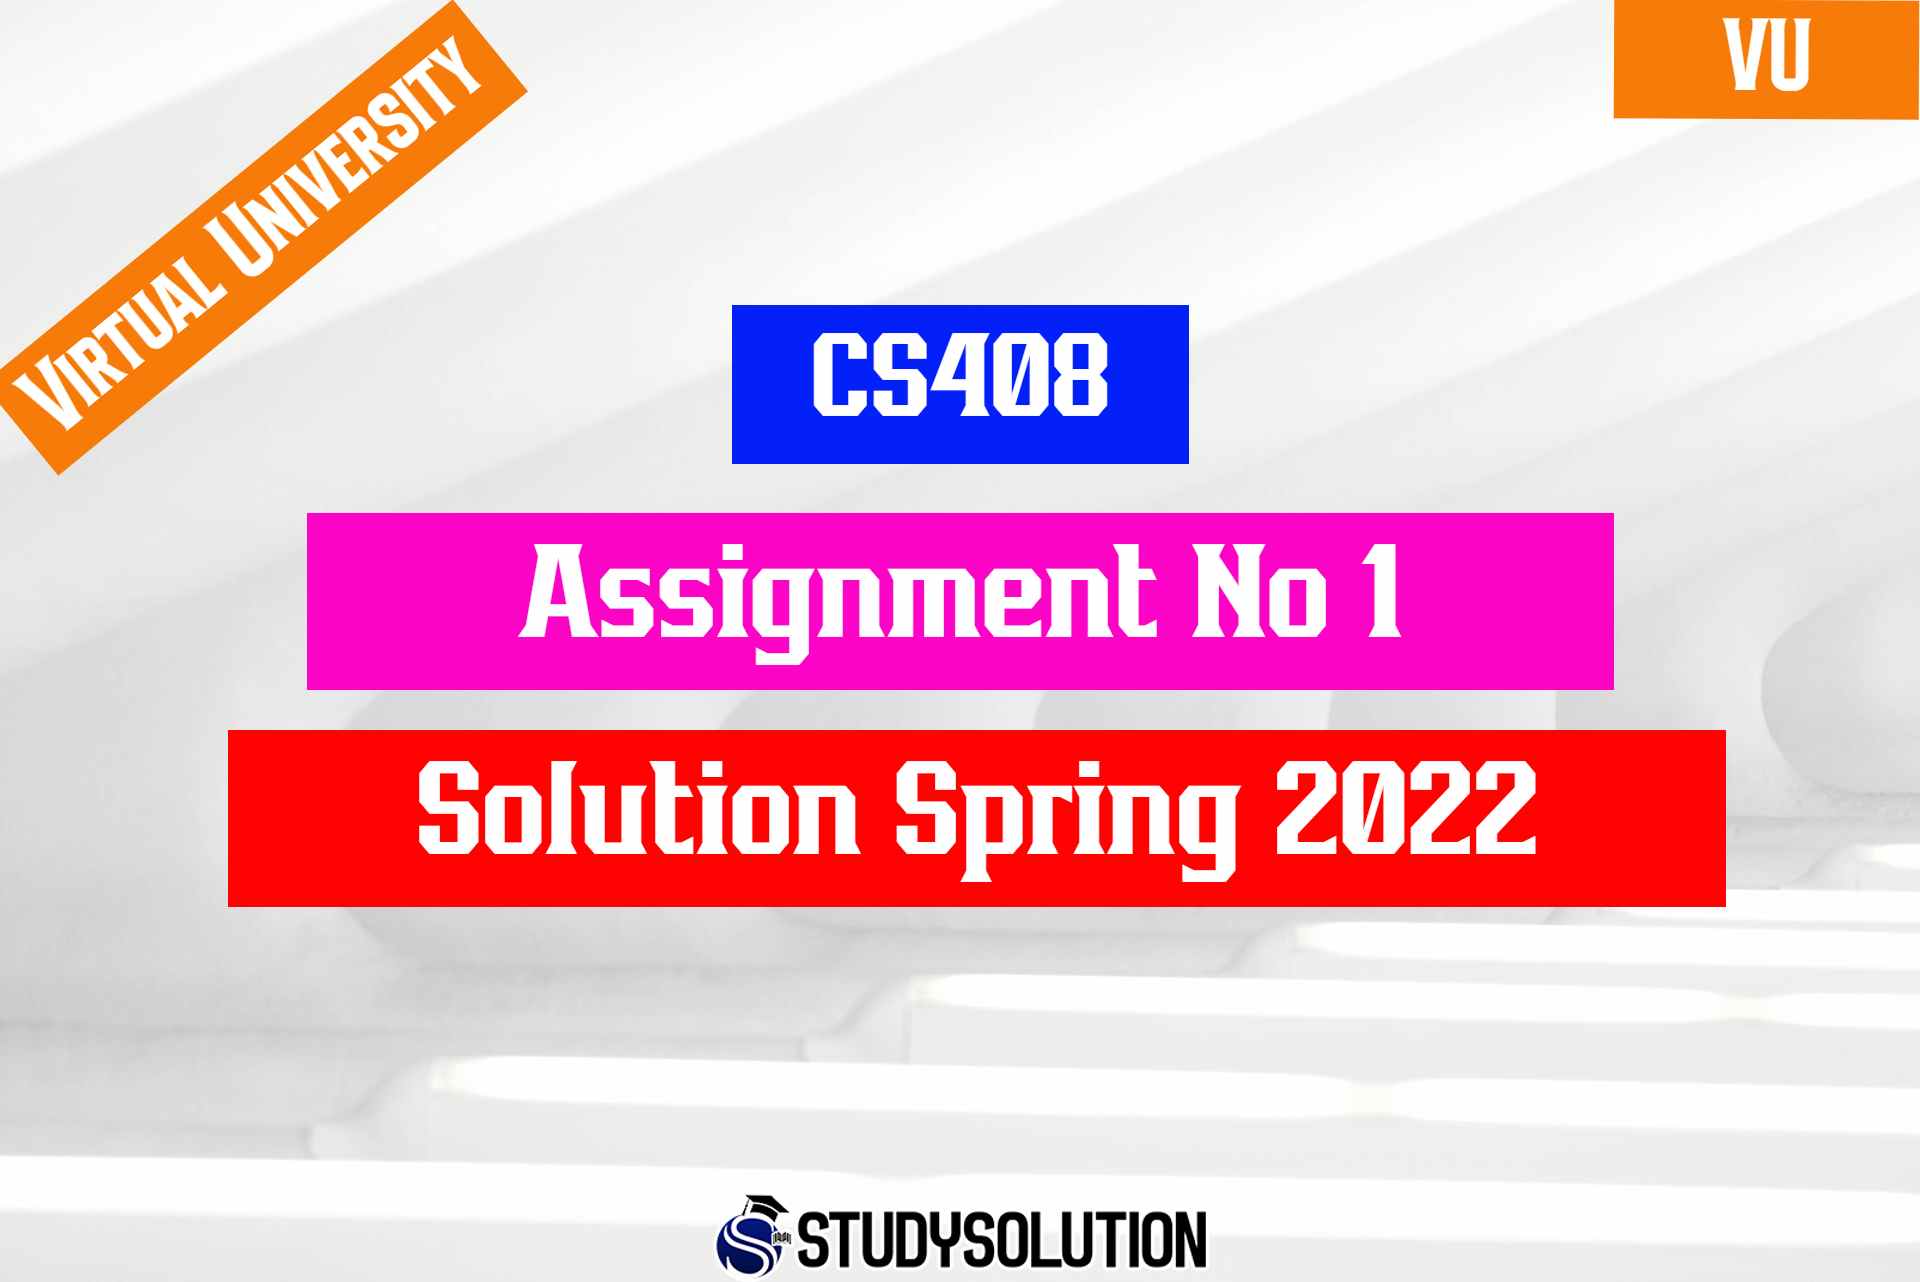 CS408 Assignment No 1 Solution Spring 2022